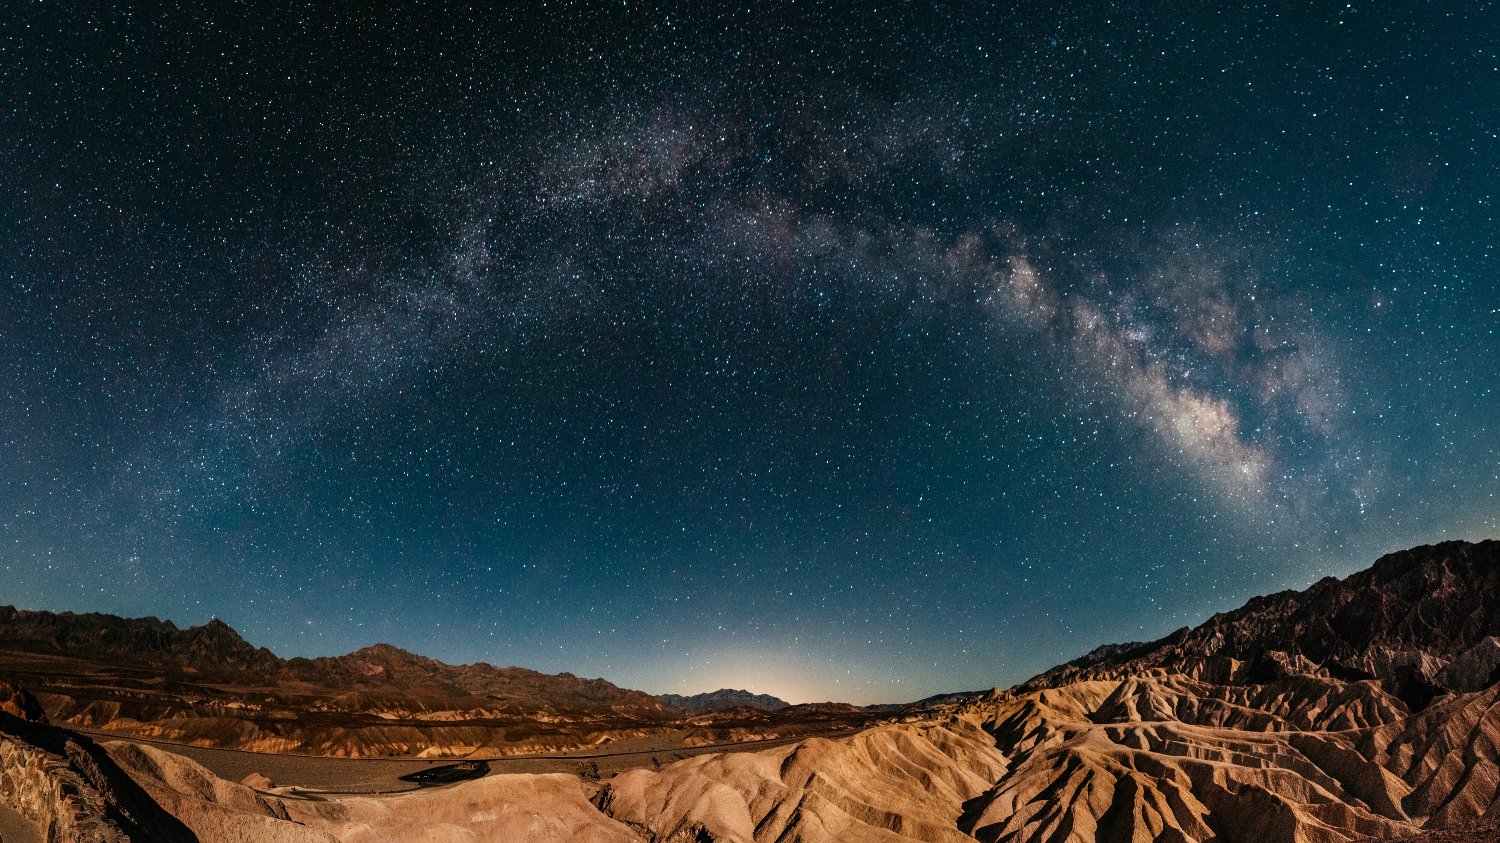 Night sky viewed from Zabriskie Point in Death Valley